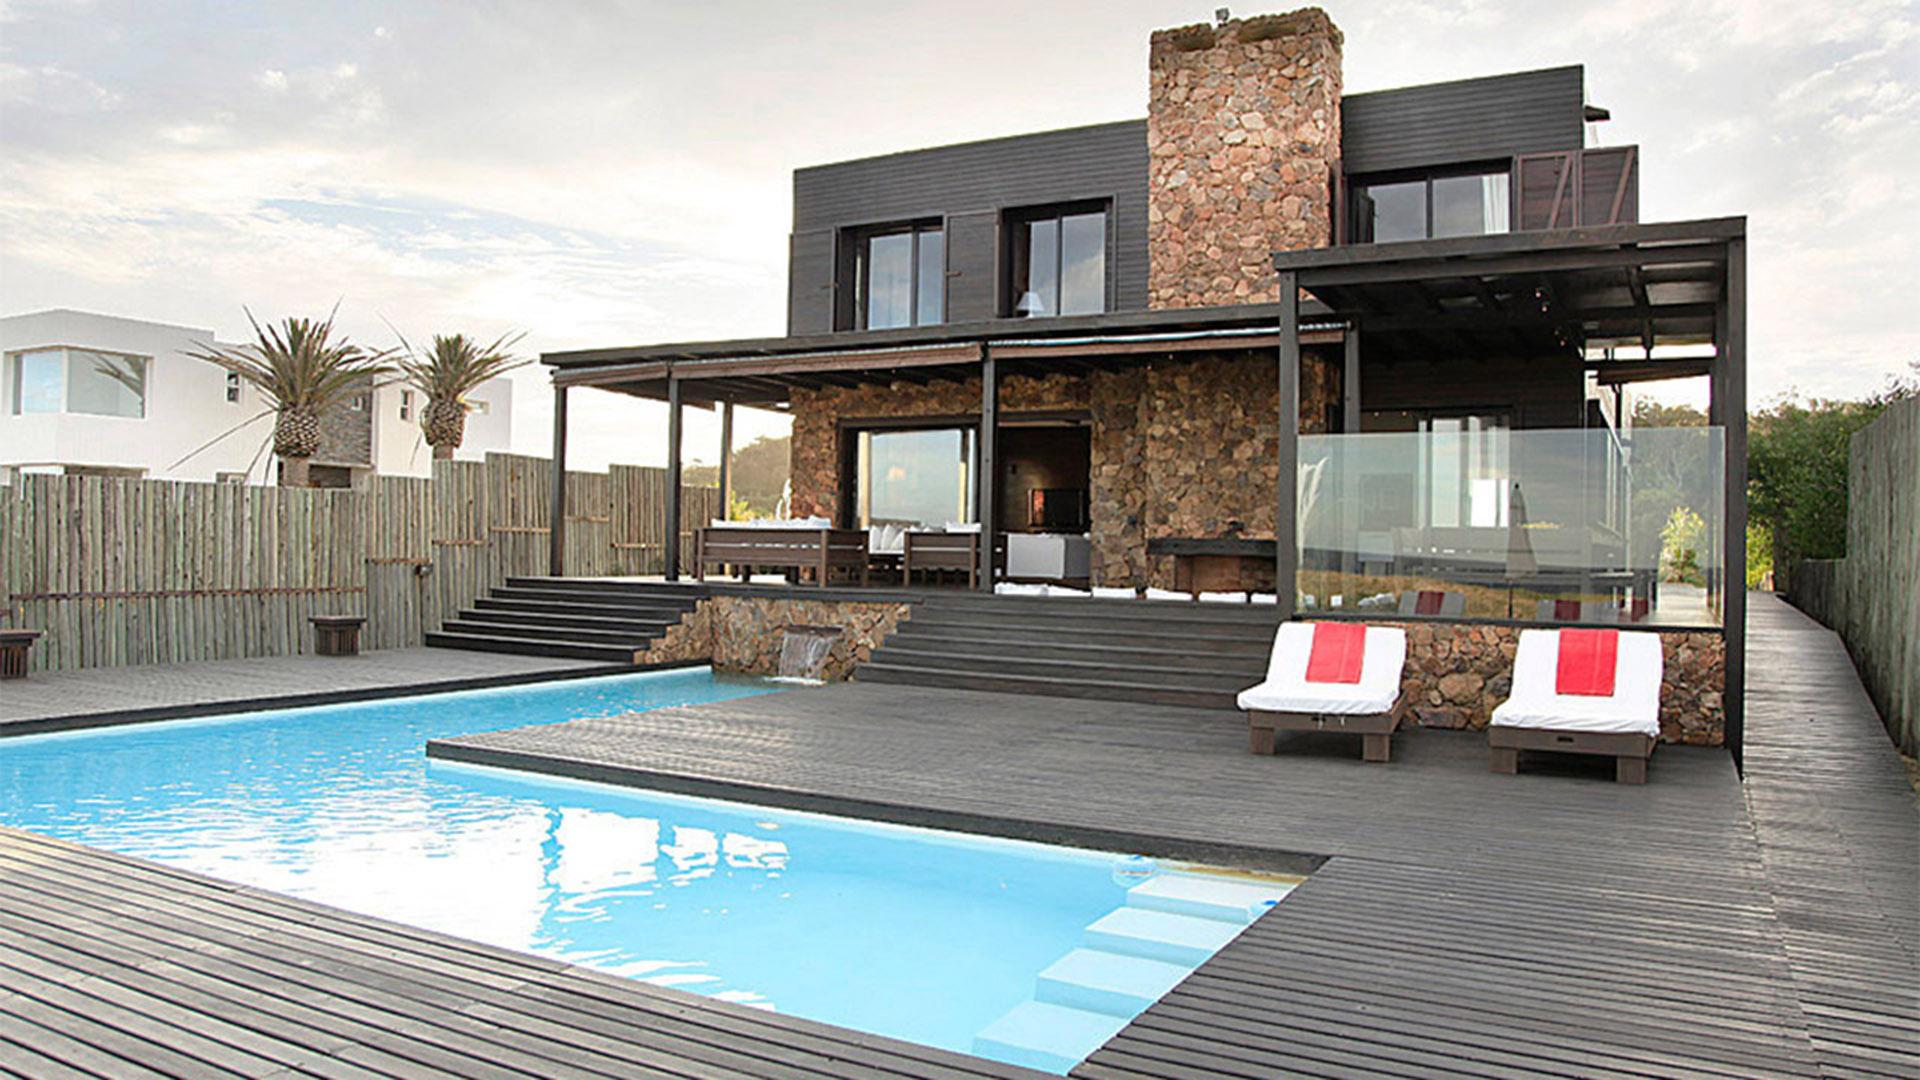 Outstanding Beachfront Villa located in Jose Ignacio, Punta del Este, Uruguay, listed by Curiocity Villas.